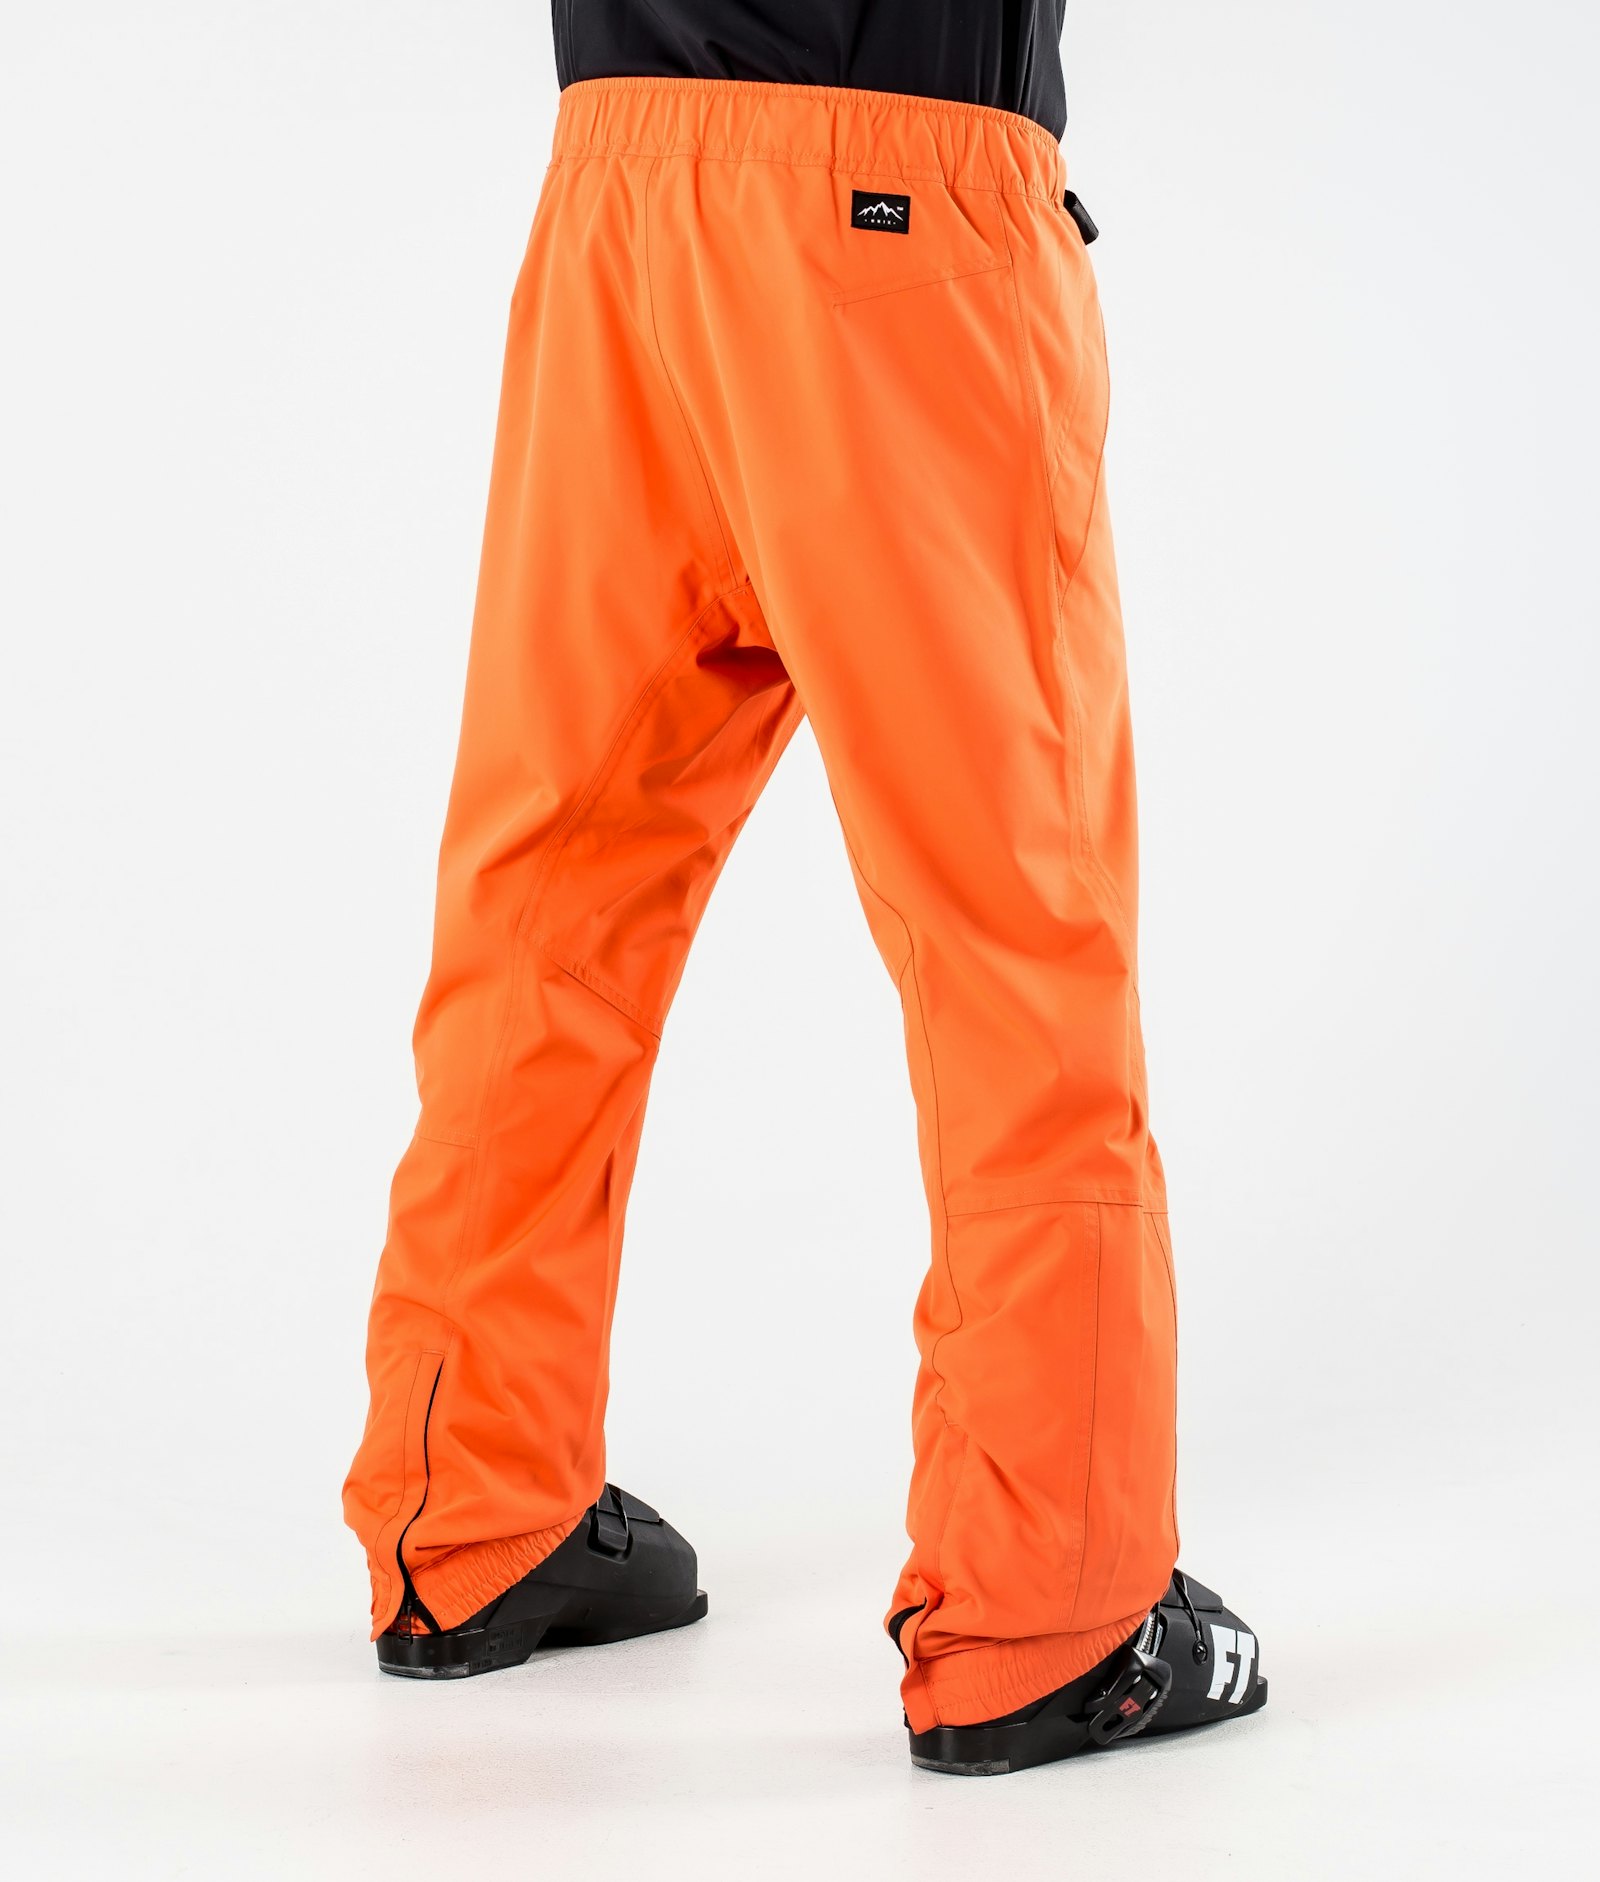 Dope Blizzard 2020 Ski Pants Men Orange